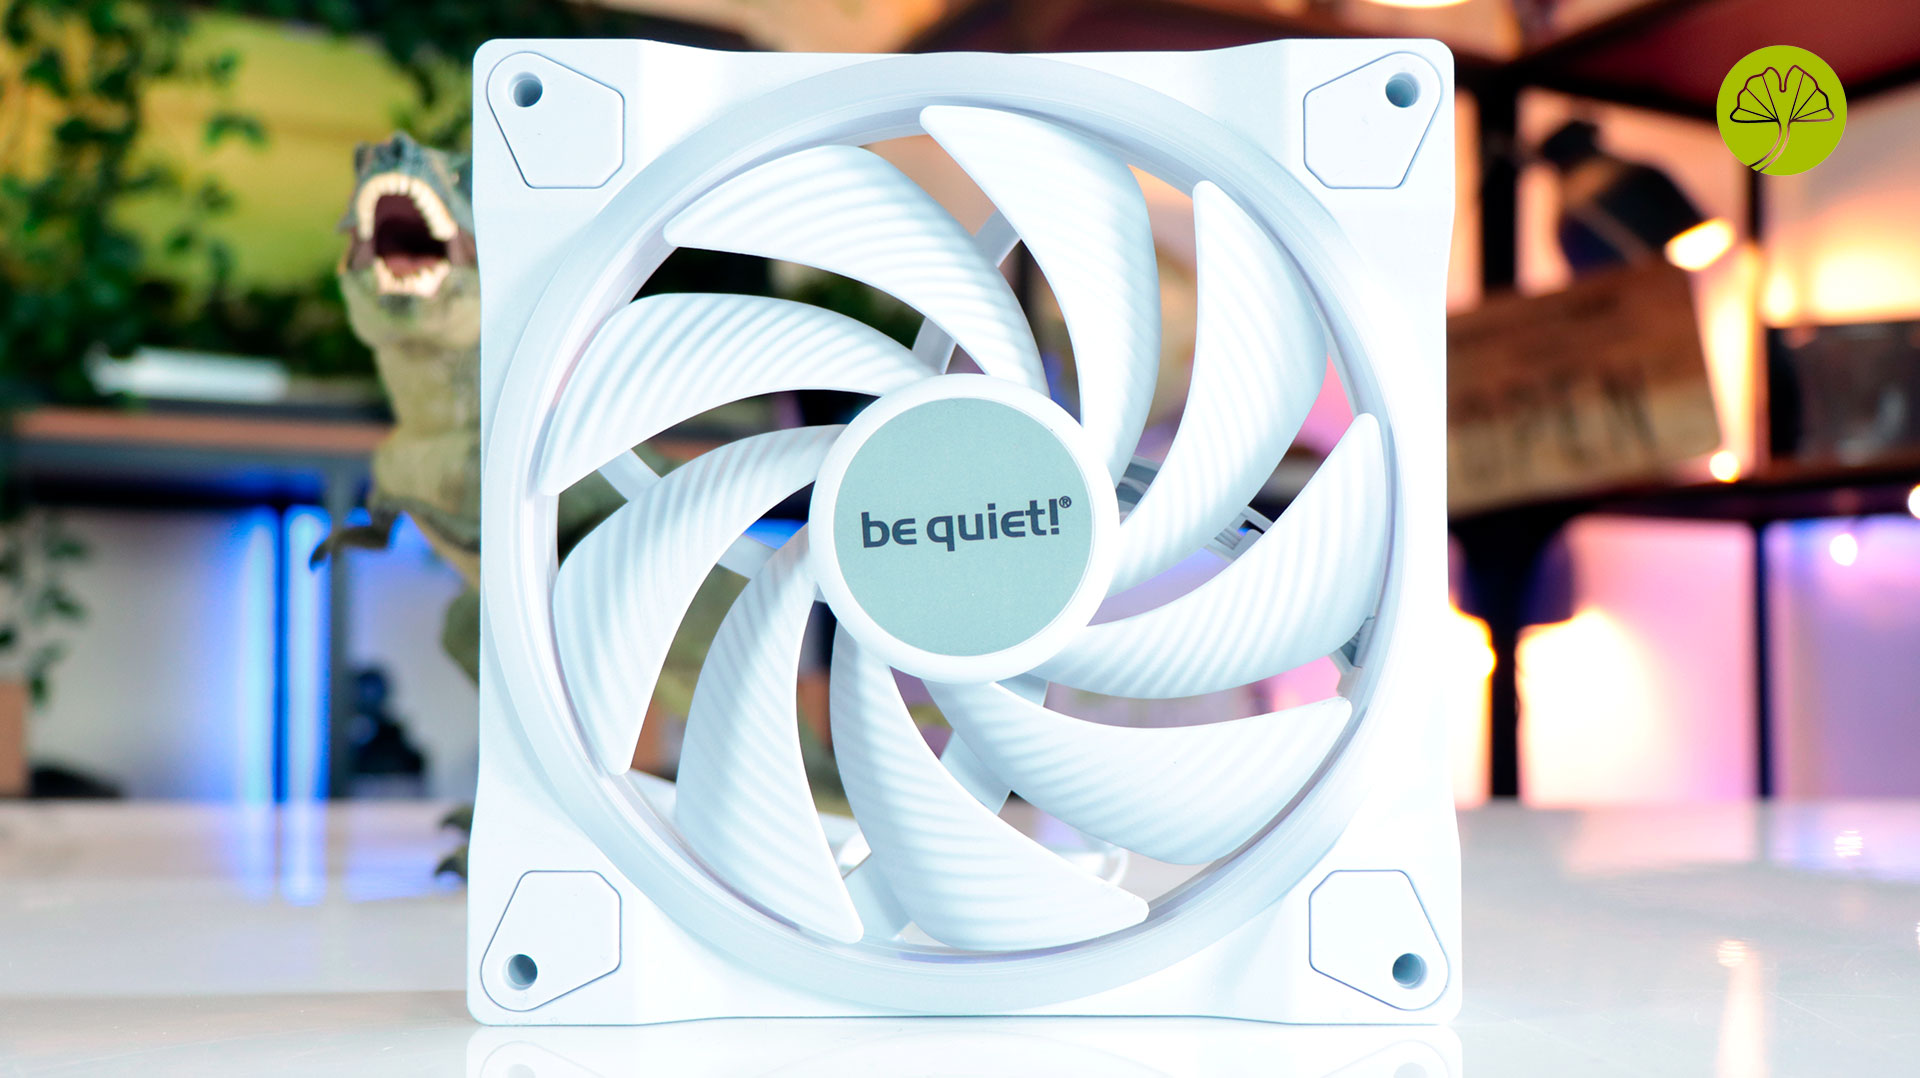 BE QUIET! - Ventilateur PC Pure Wings 2 140mm hi…